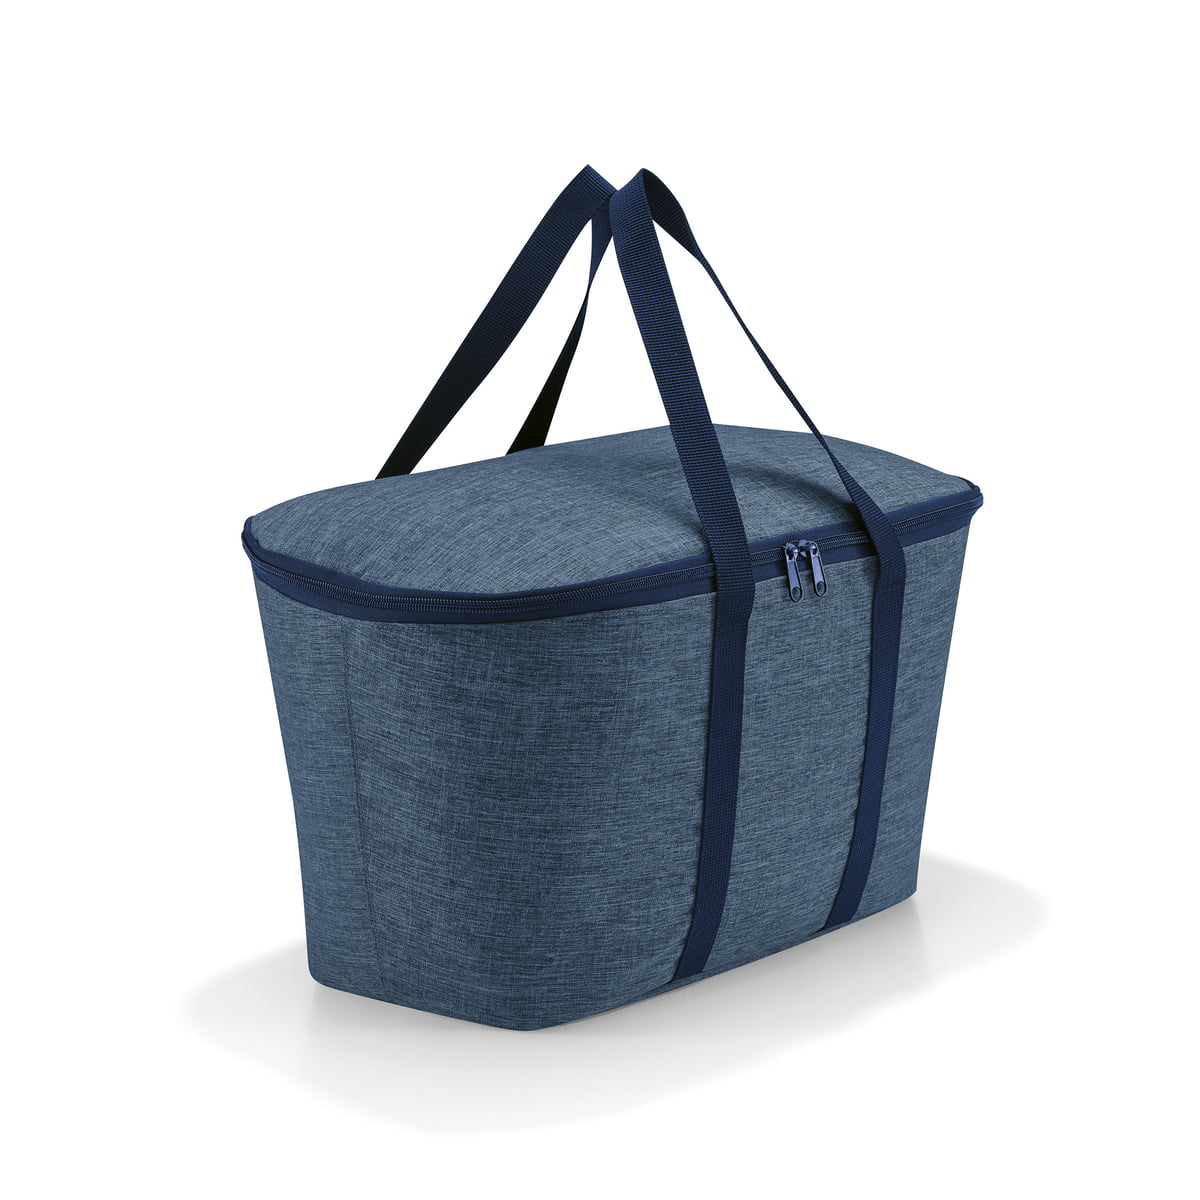 La borsa frigo Coolerbag Twist Blue è fatta su misura per funzionare come borsa per il trasporto, cestino della spesa, o come un compagno fantastico da solo. Caratteristiche Dimensioni (L x A x P in cm): 44,5 x 24,5 x 25 Capacità: 20 l Tessuto con tre volte più fili fini e multicolori, colore blu.